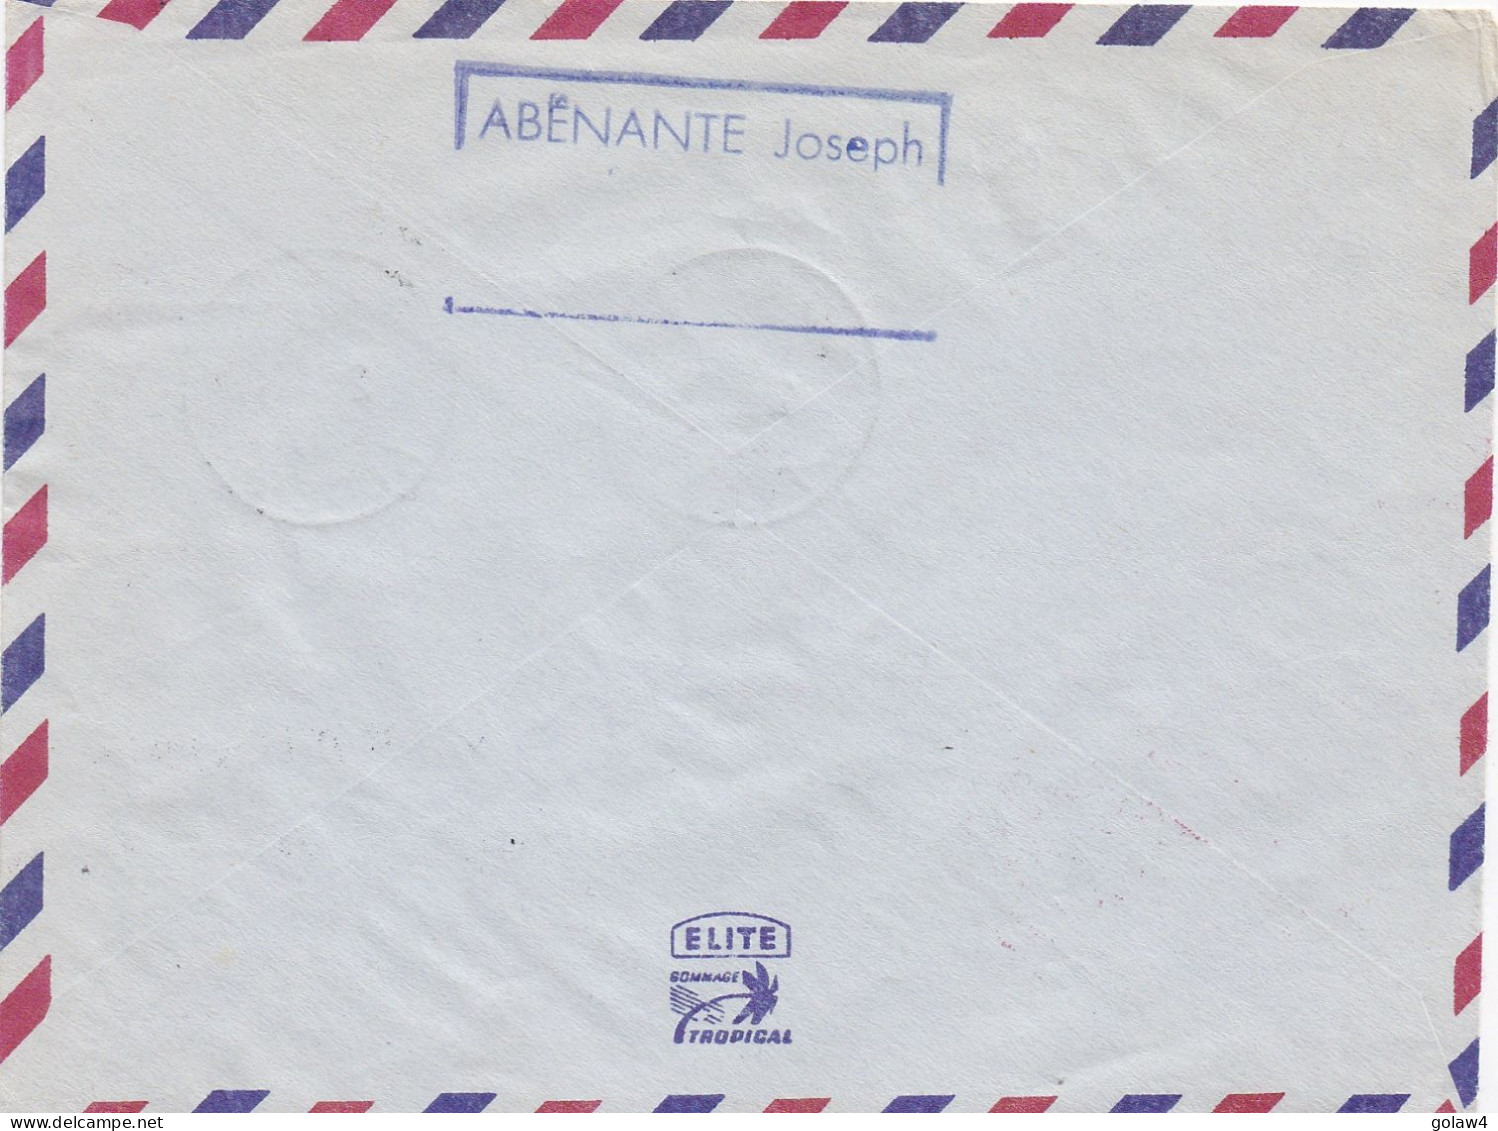 33232# ALGERIE LETTRE 1ere LIAISON AERIENNE BOU SAADA ALGER 2 SEPTEMBRE 1957 AEROPHILATELIE MARCOPHILIE ALGERIENNE - Airmail